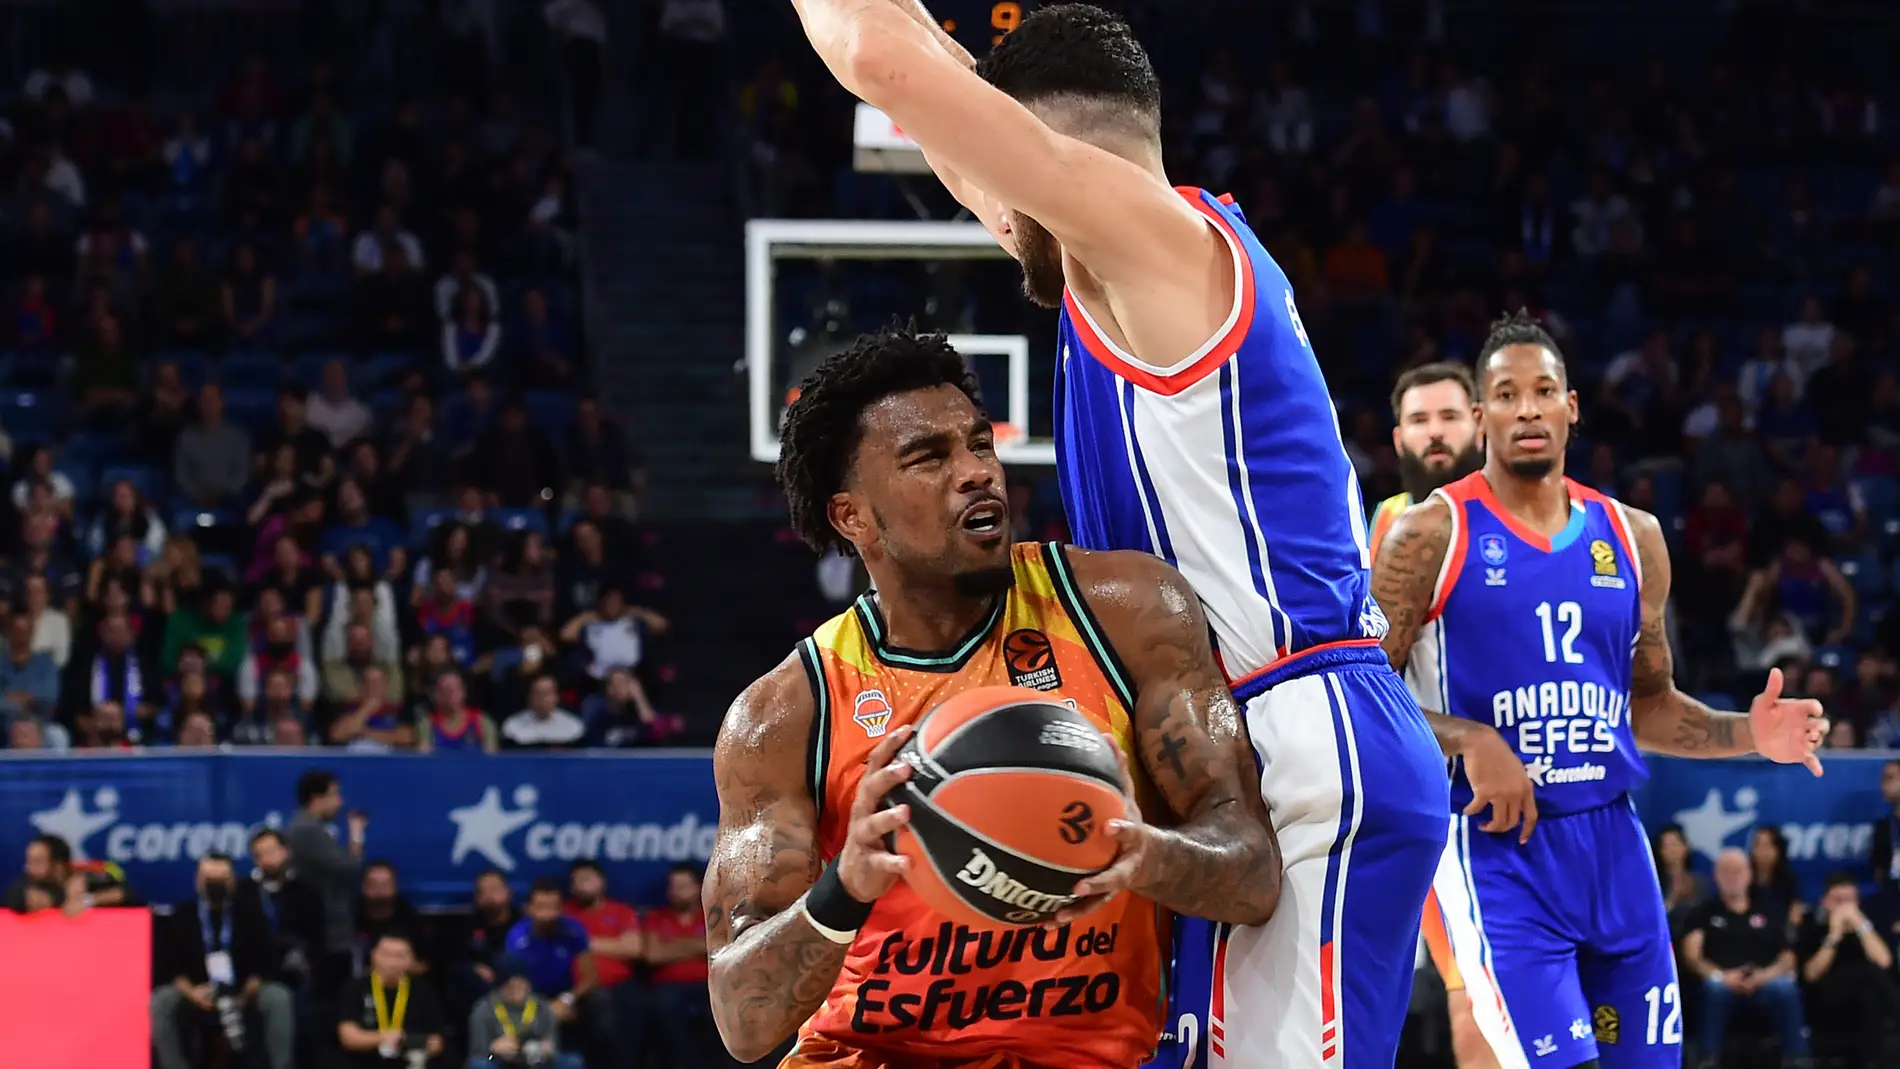 El Valencia Basket asalta la cancha del campeón de Euroliga